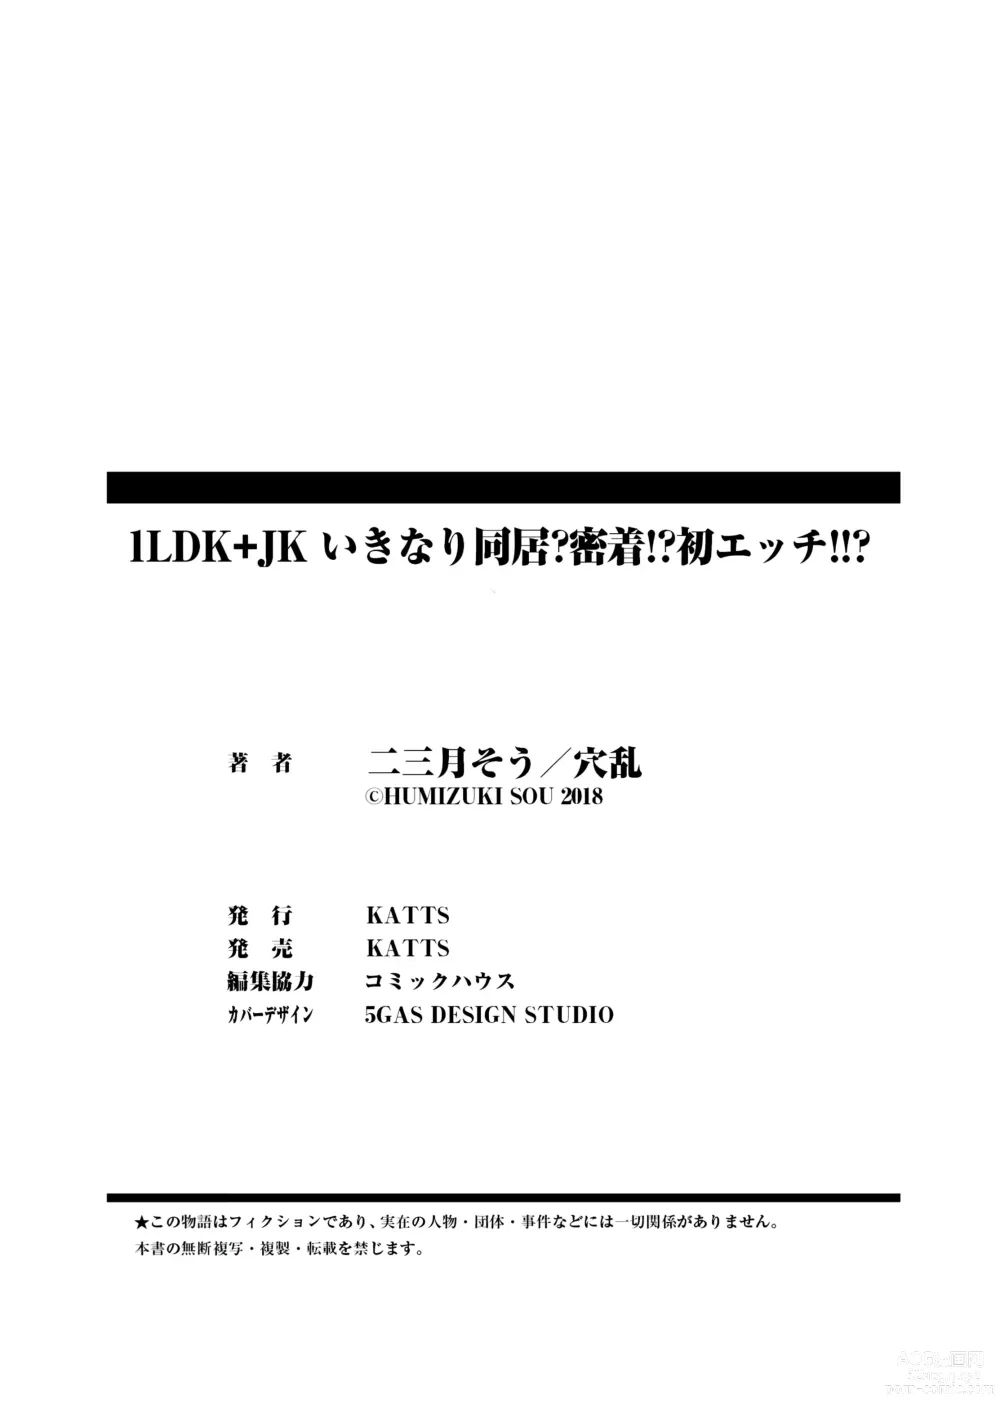 Page 196 of manga 1LDK+JK Ikinari Doukyo? Micchaku!? Hatsu Ecchi!!? Vol. 1